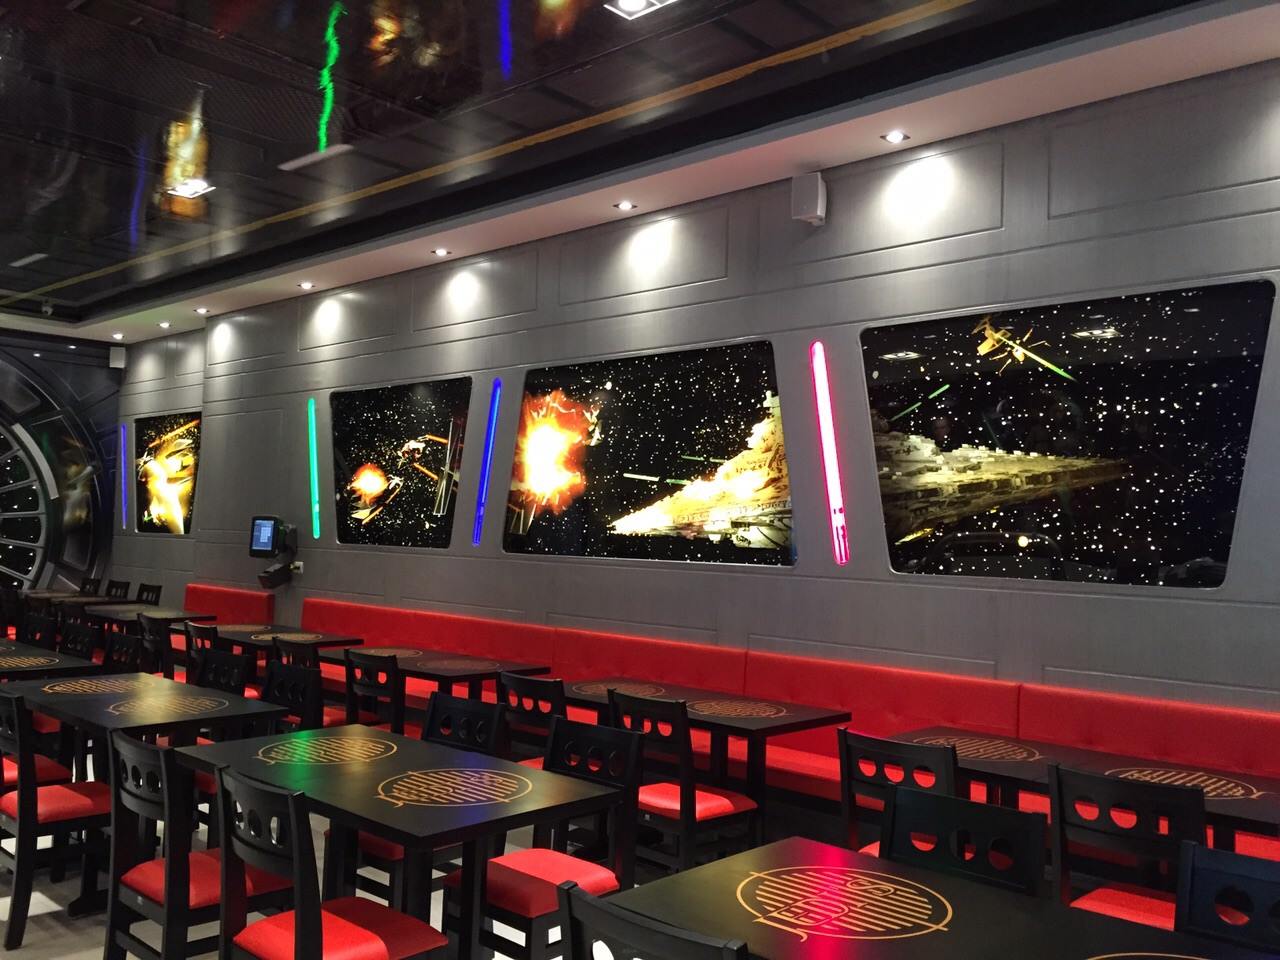 Un restaurant Star Wars vient d'ouvrir au Brésil